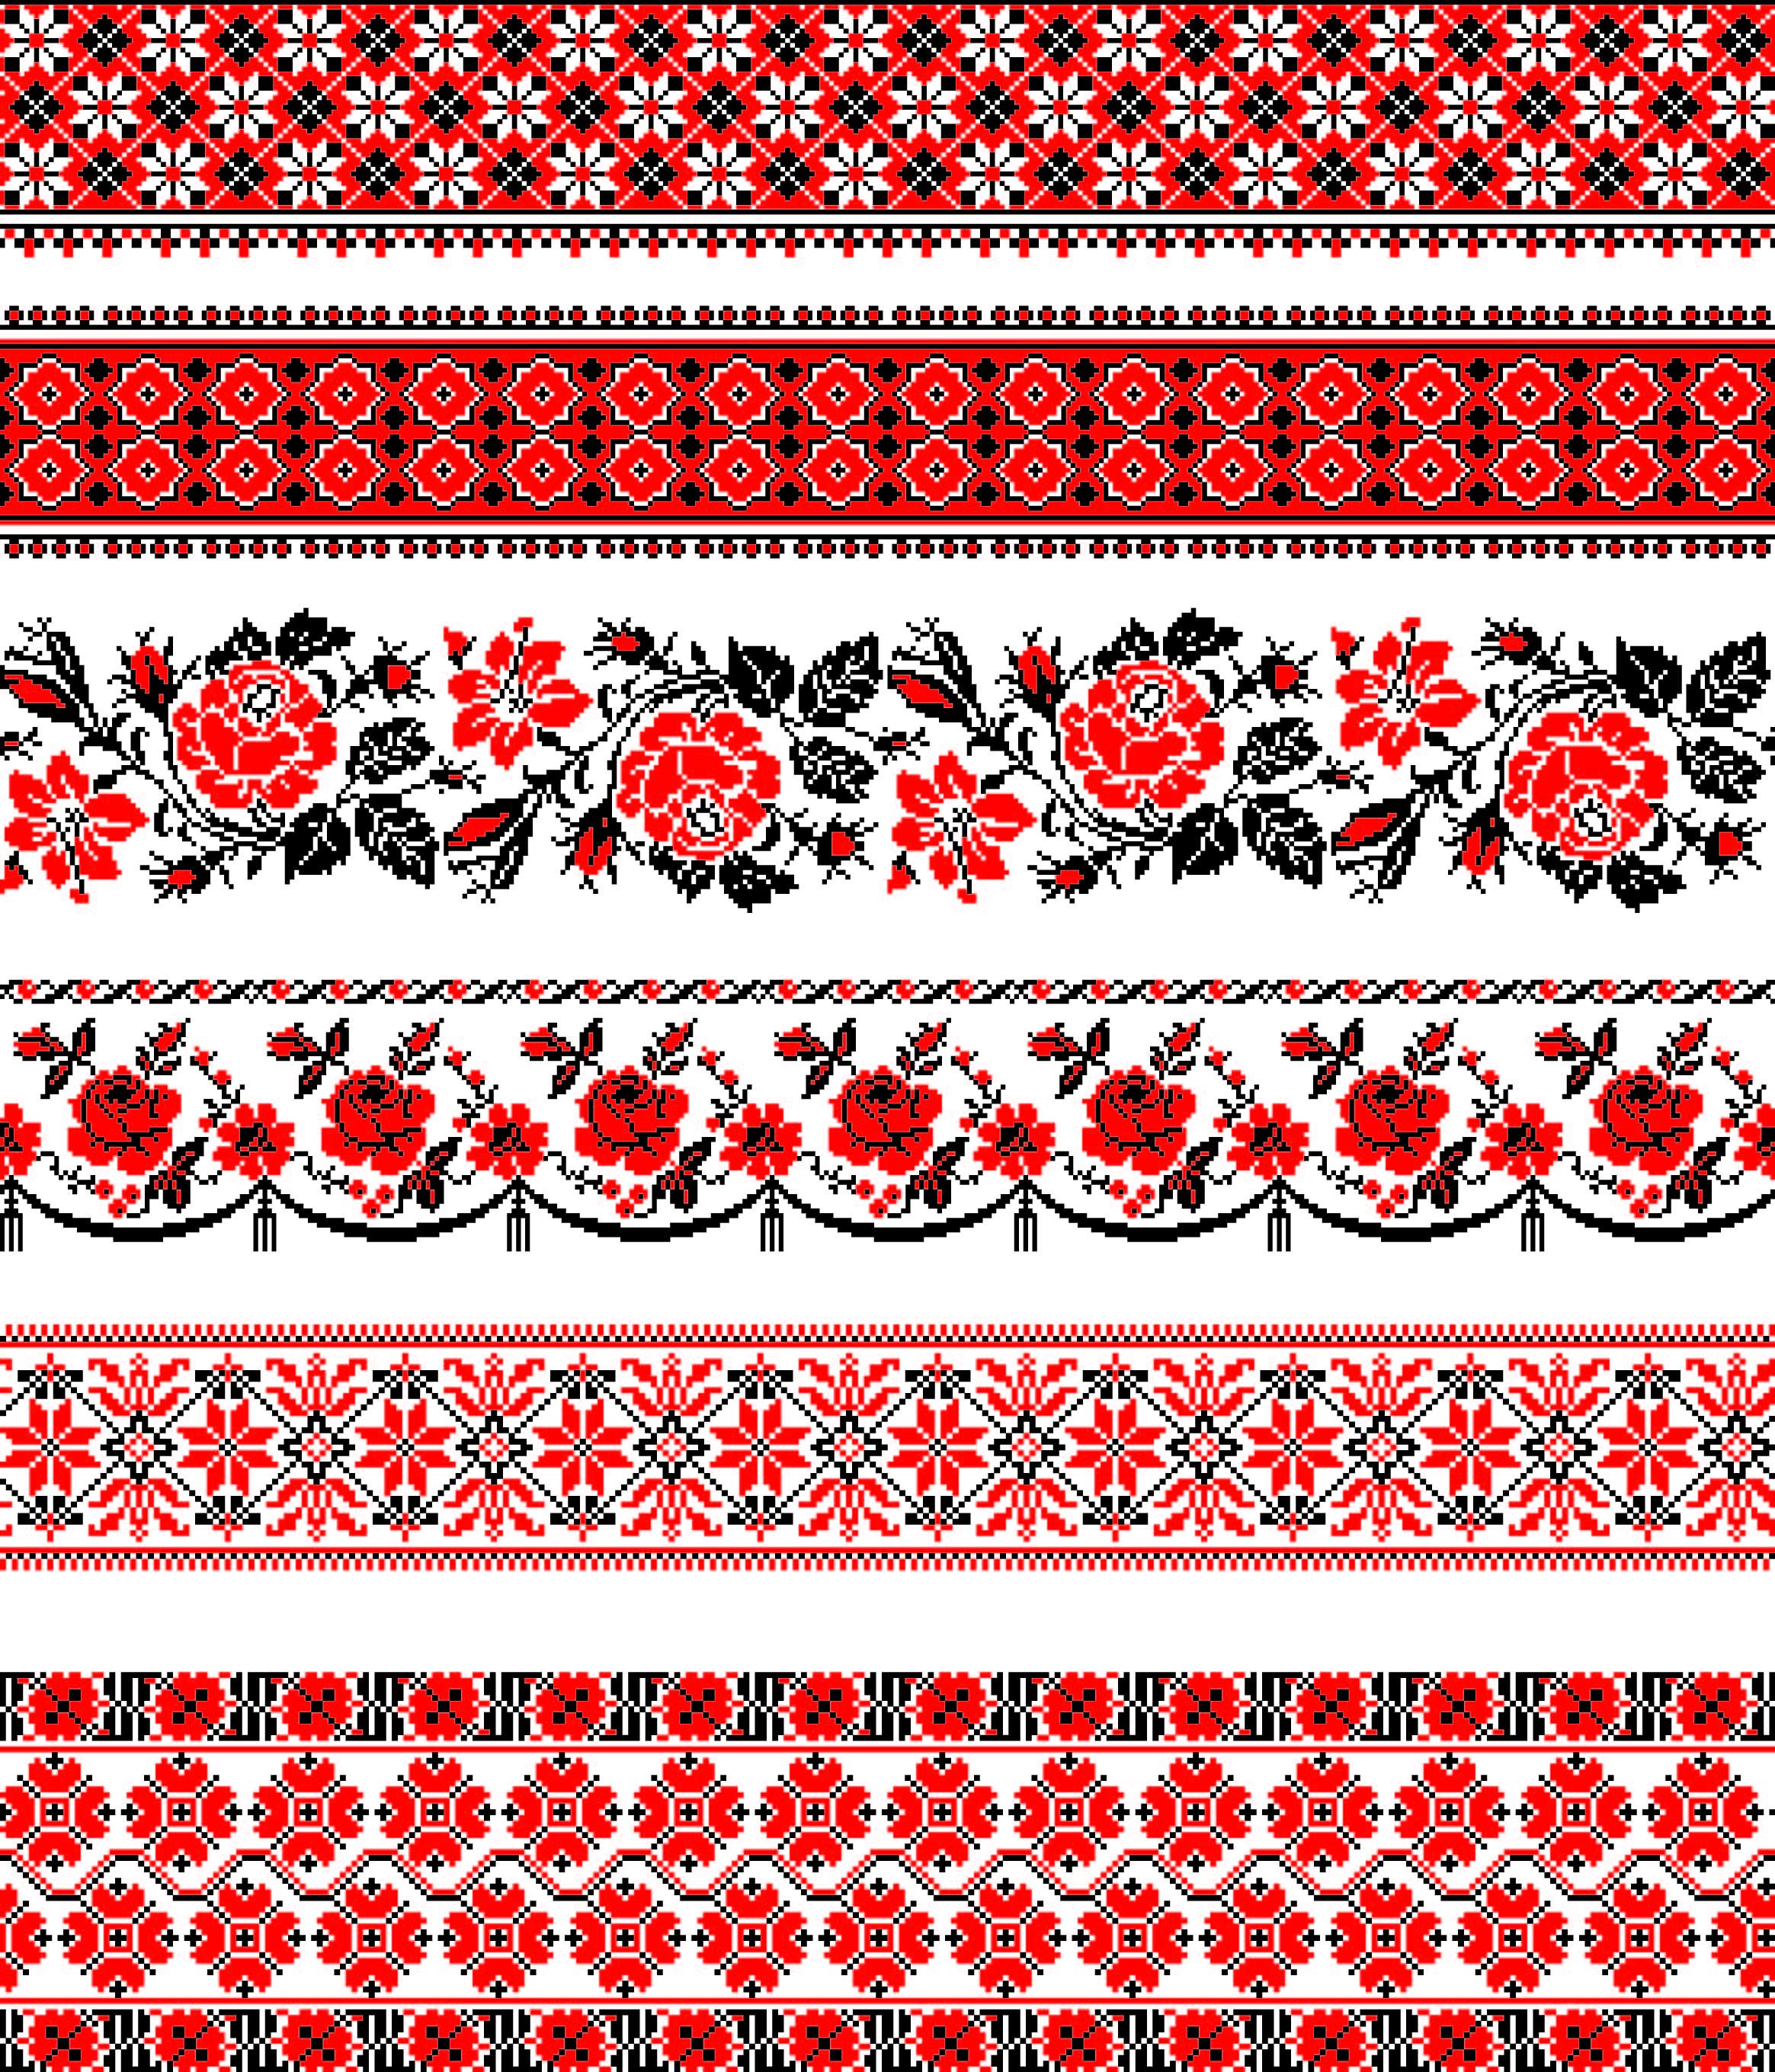 Символика орнамента на русских полотенцах